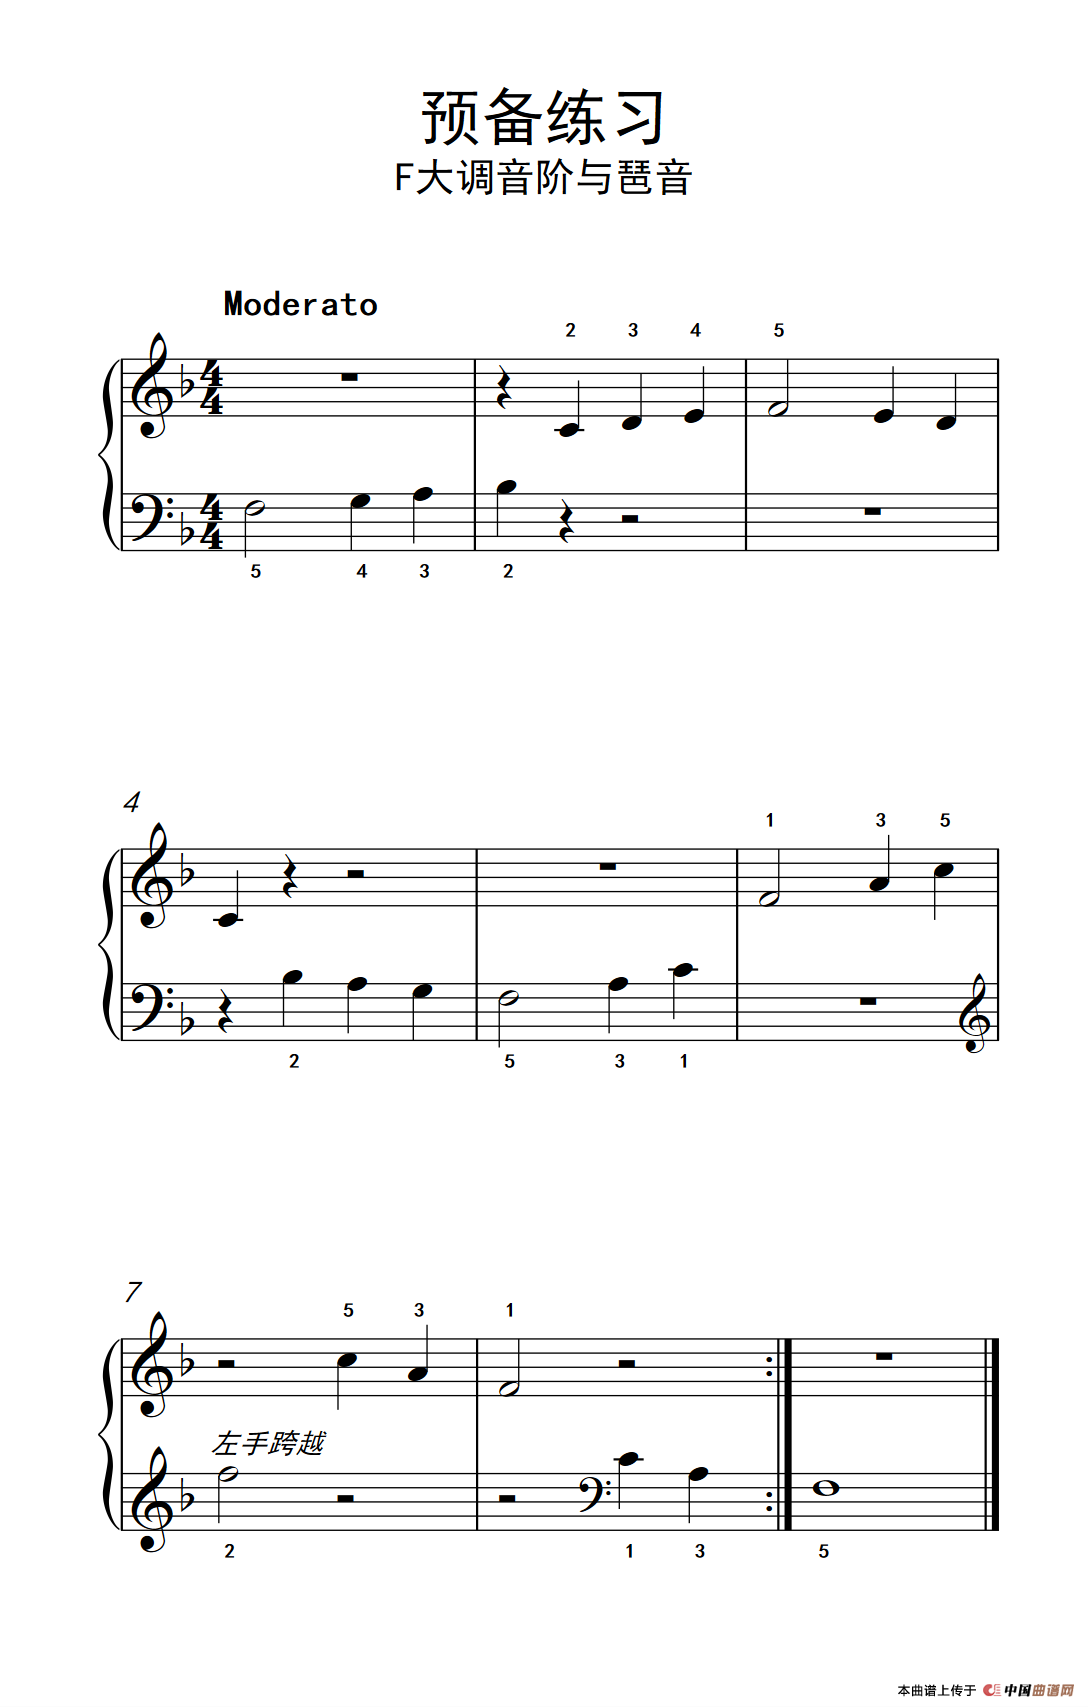 《预备练习 F大调音阶与琶音》钢琴曲谱图分享